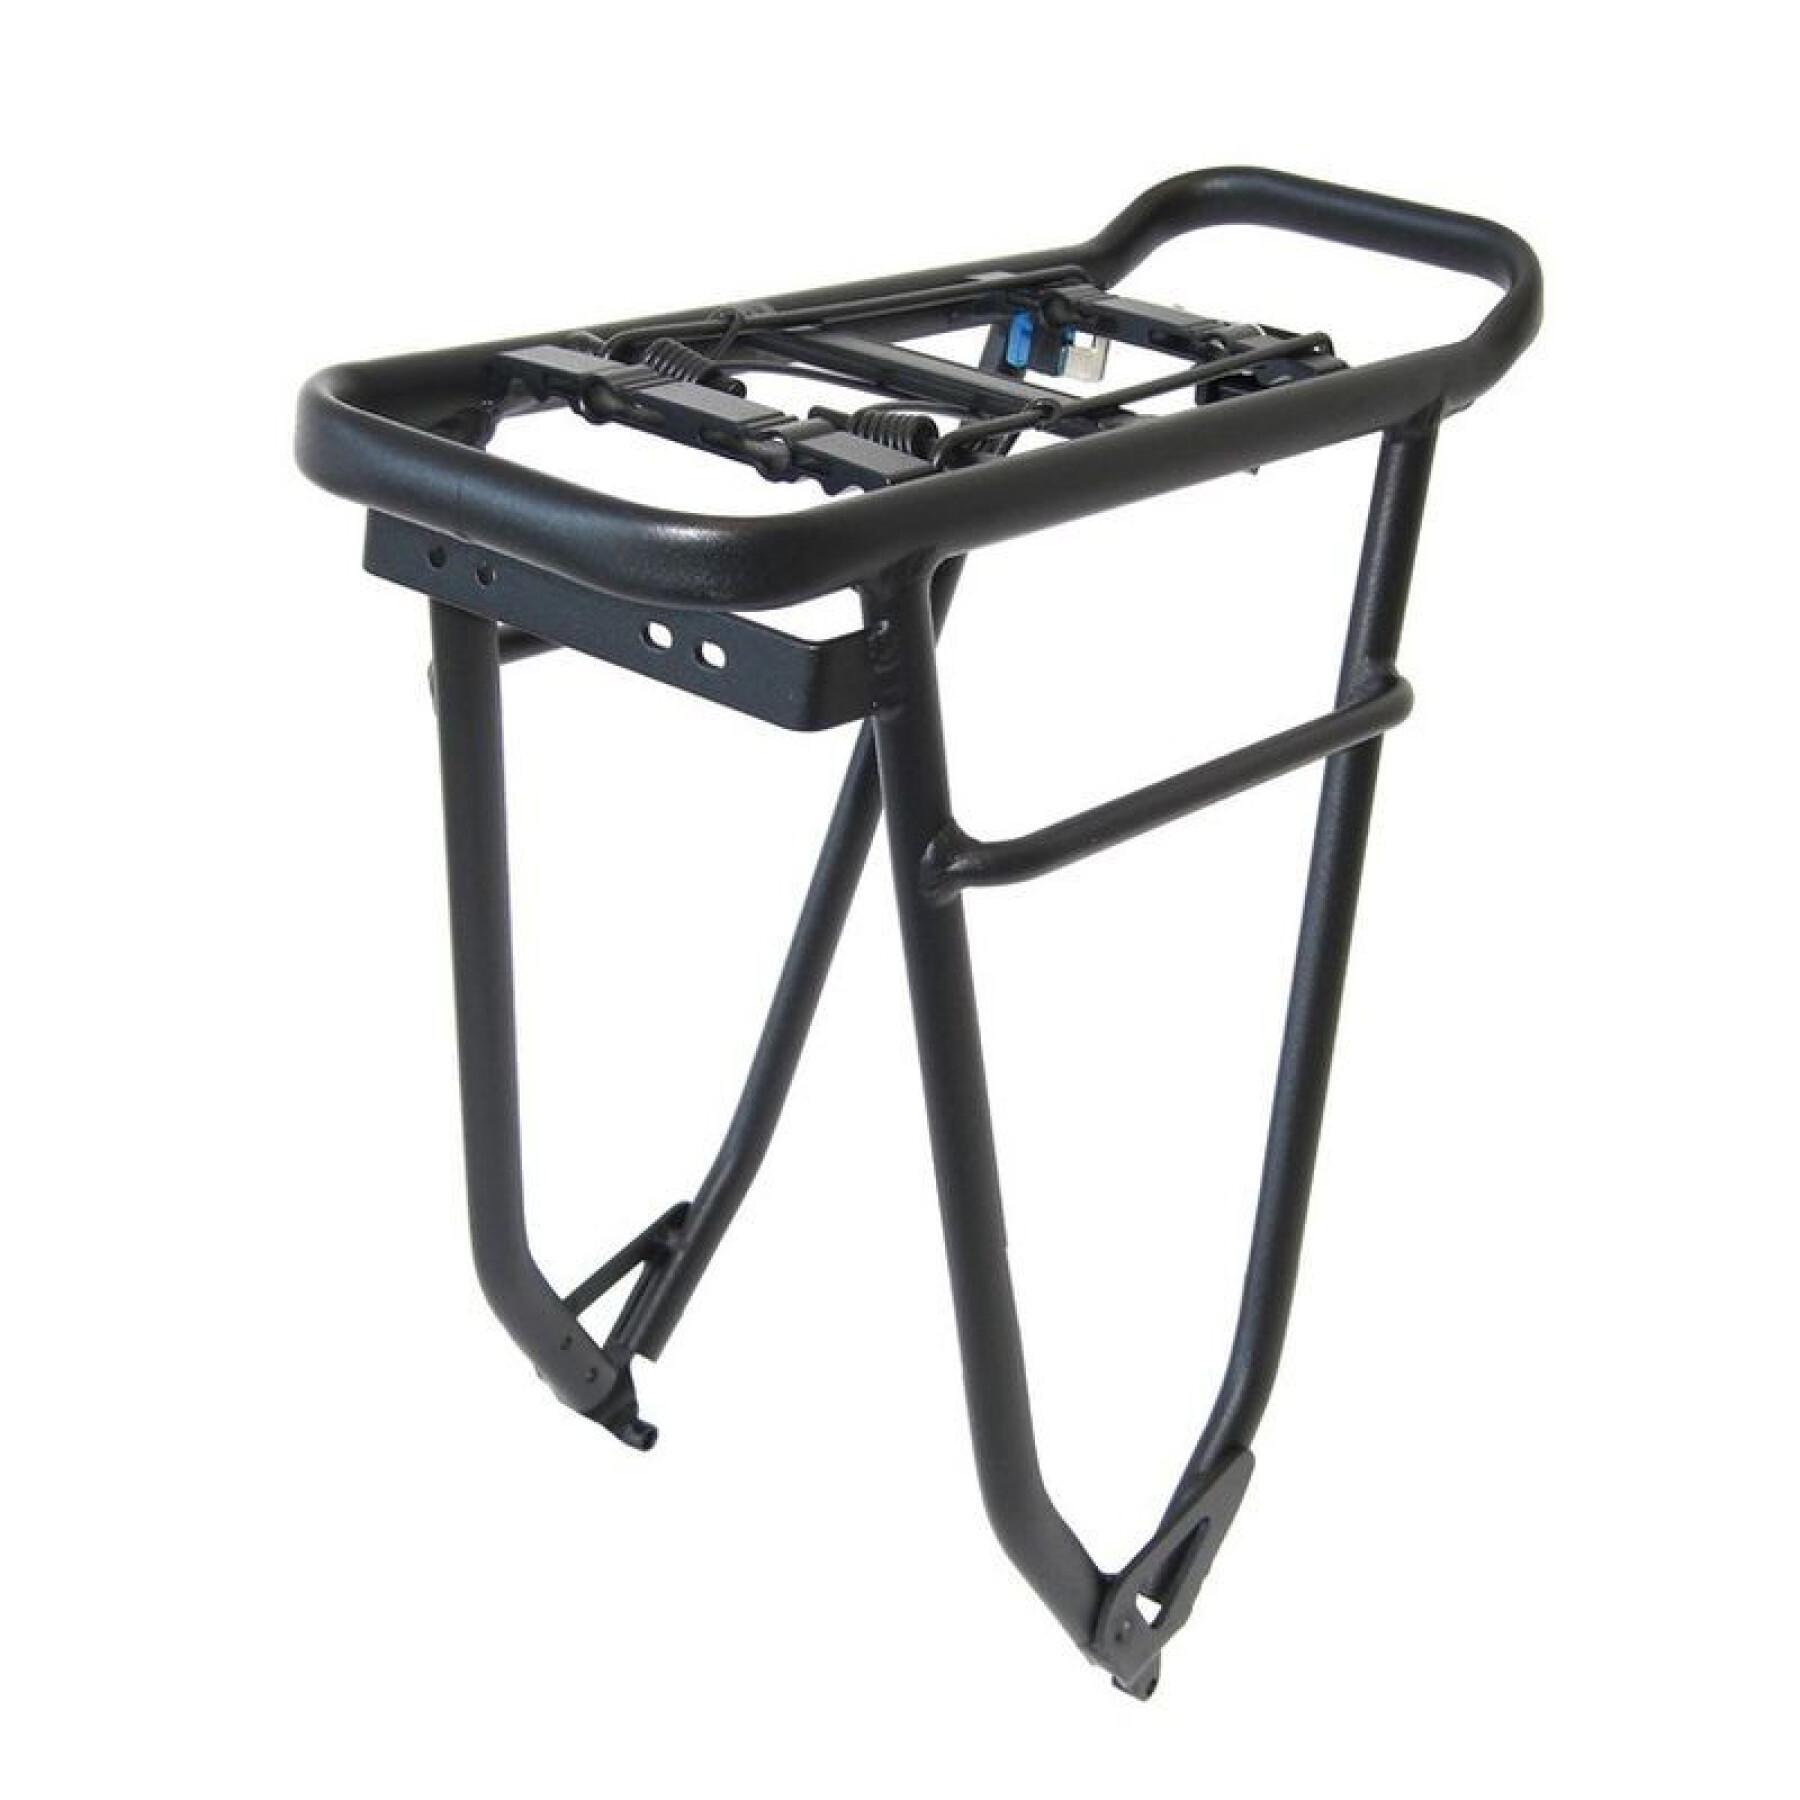 Luggage rack compatible with boost Haibike E-bike - Yamaha